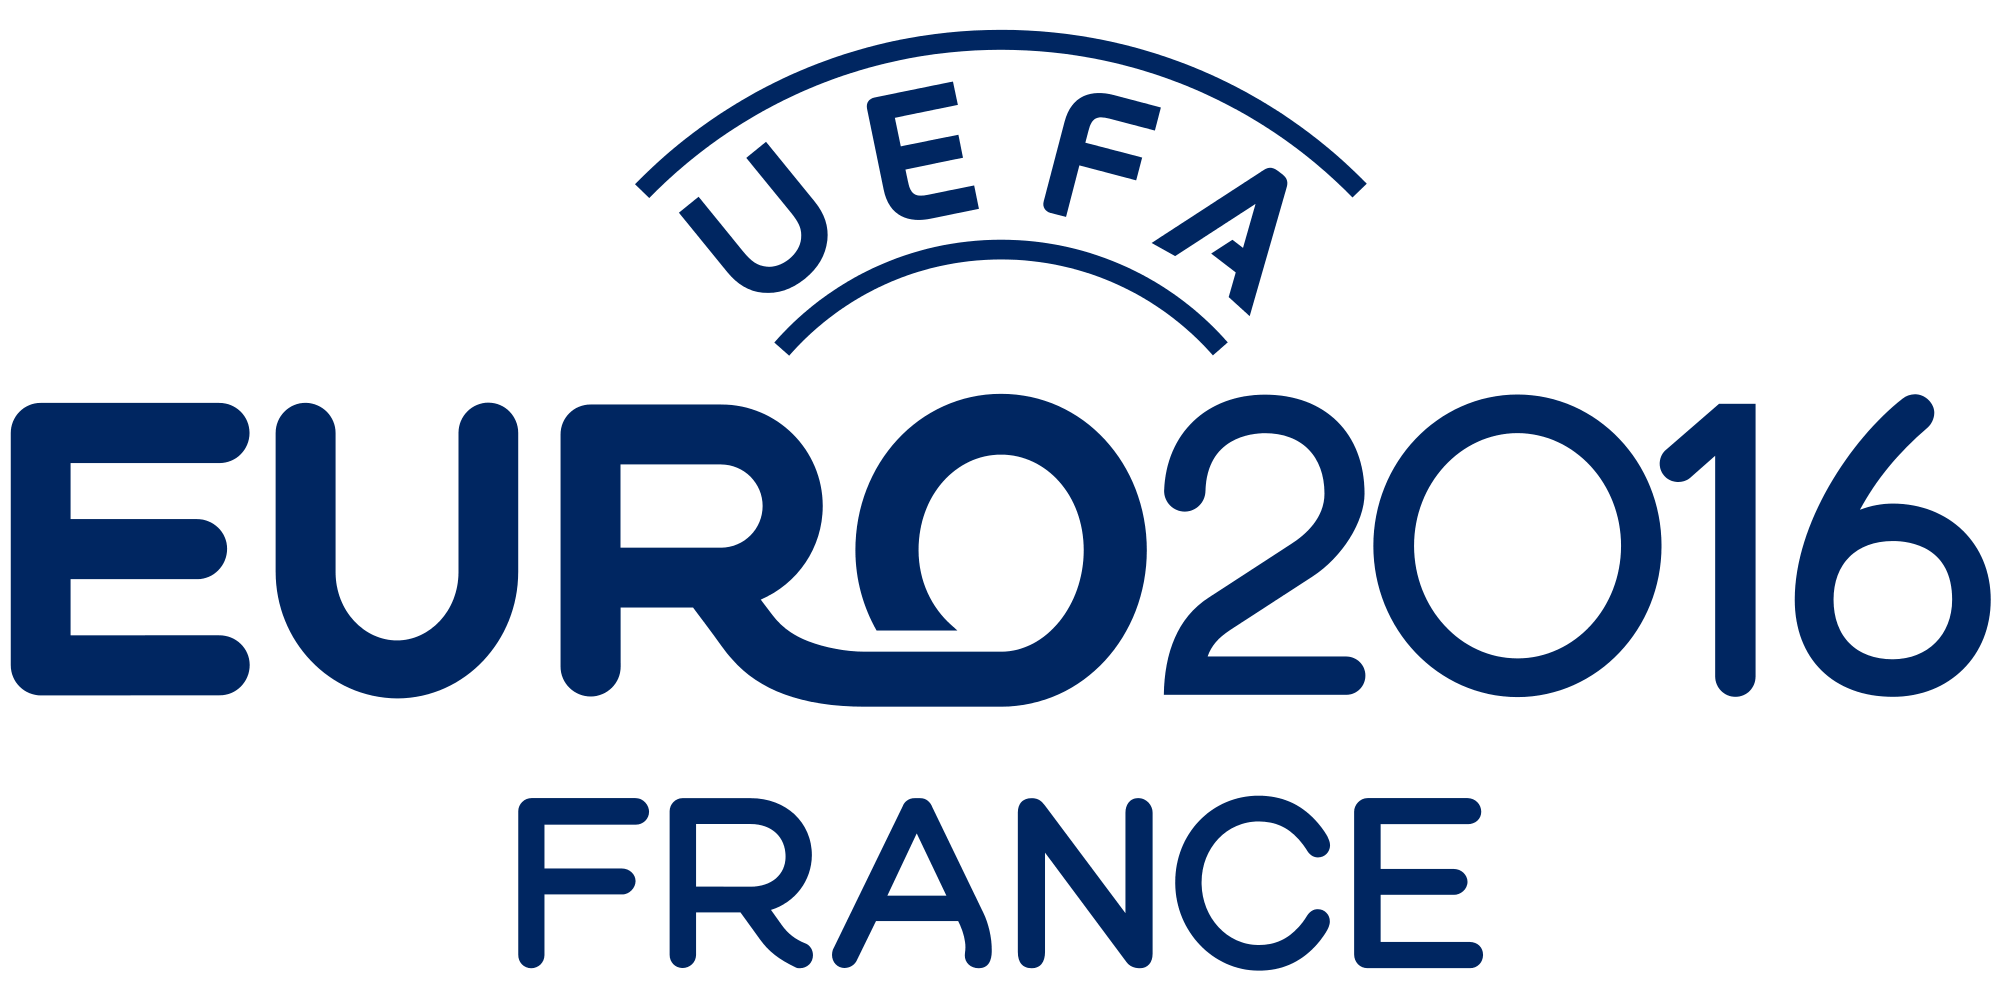 Image of UEFA Euro 2016 logo